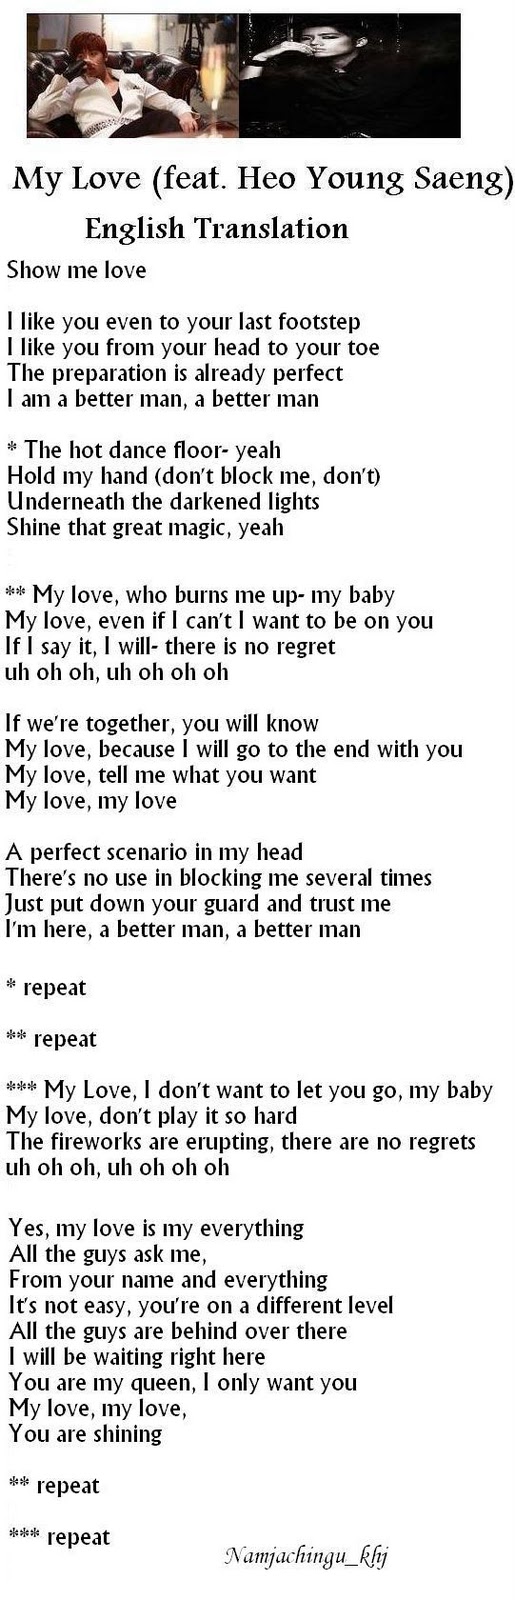 Ikon love scenario lyrics